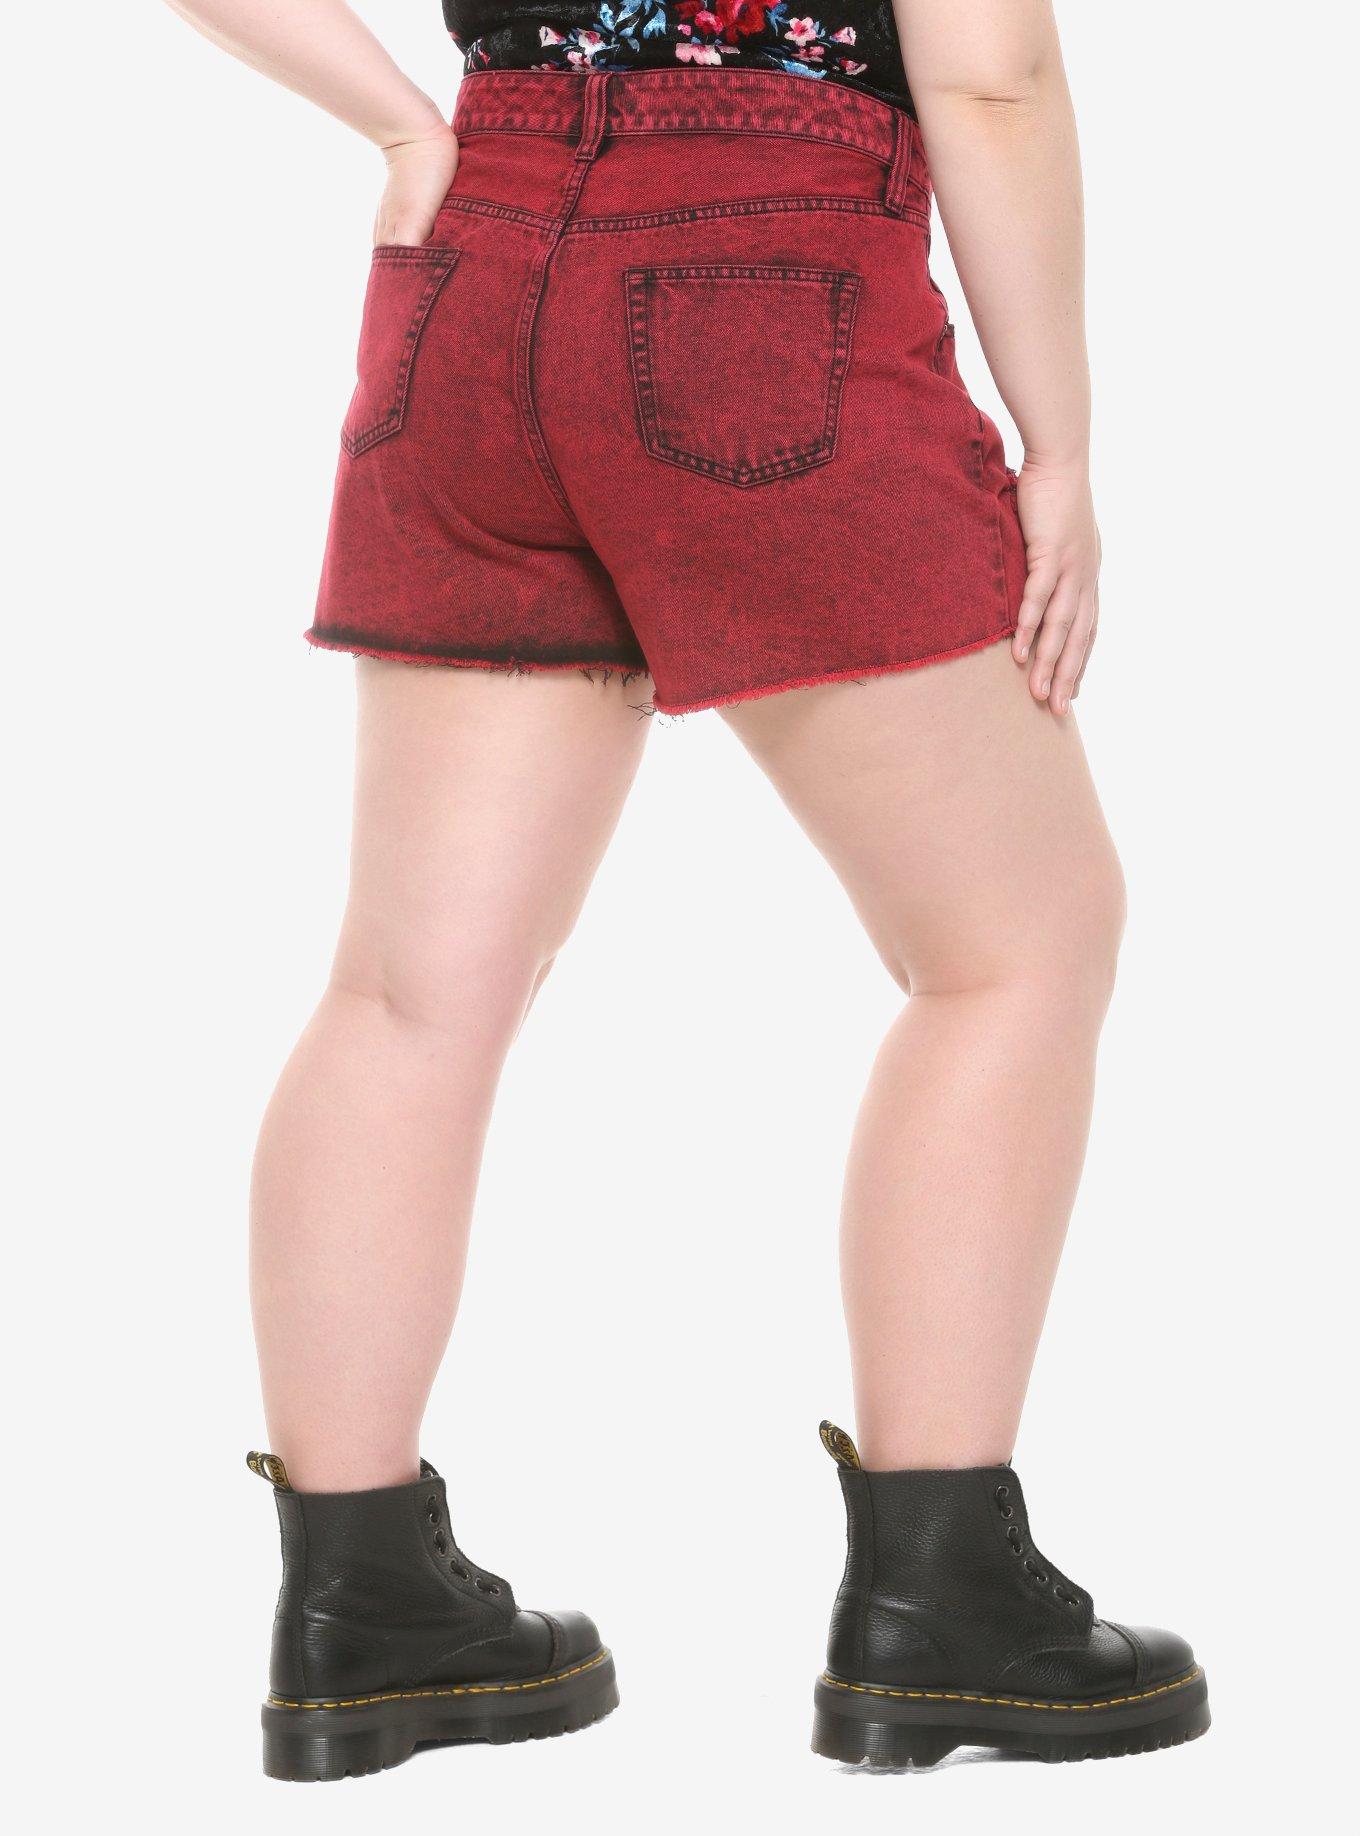 HT Denim Ultra Hi-Rise Washed Red Vintage Cut-Off Shorts Plus Size, ACID, alternate